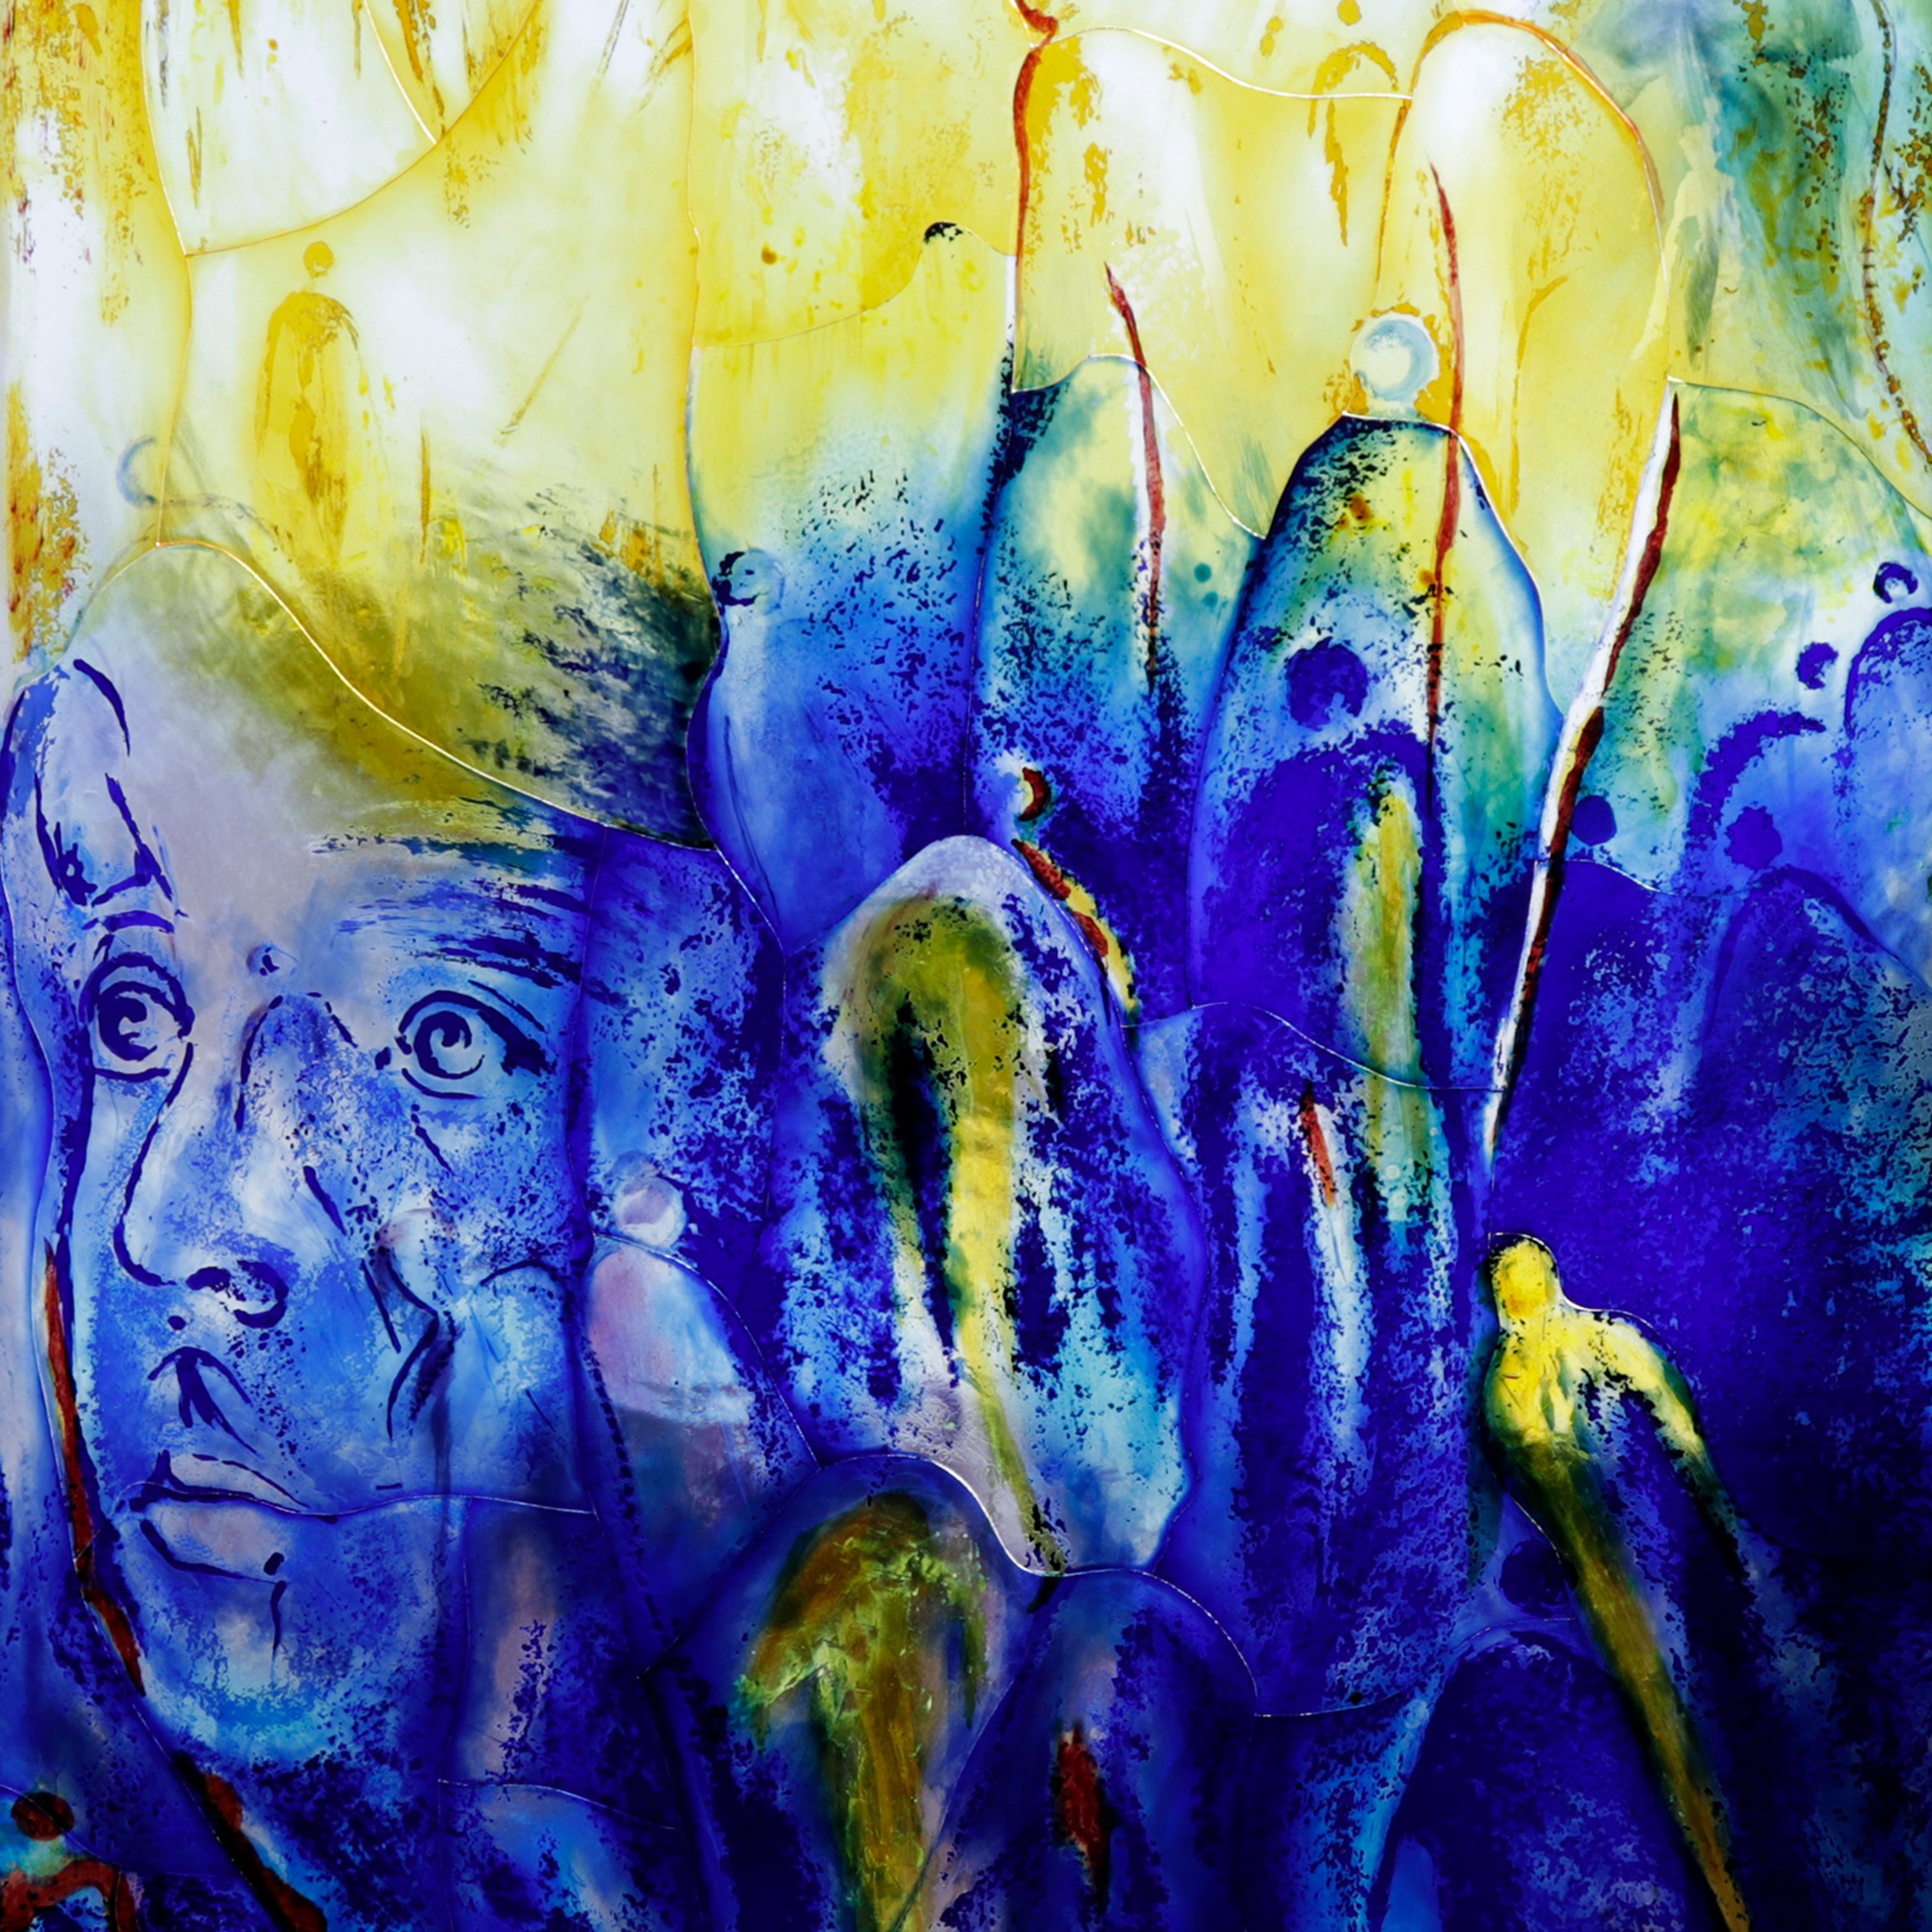 Farbenfrohes Glaskunstwerk mit blau-gelben Farbverläufen und dem Gesicht einer Person, erstellt von Derix Glasstudios.